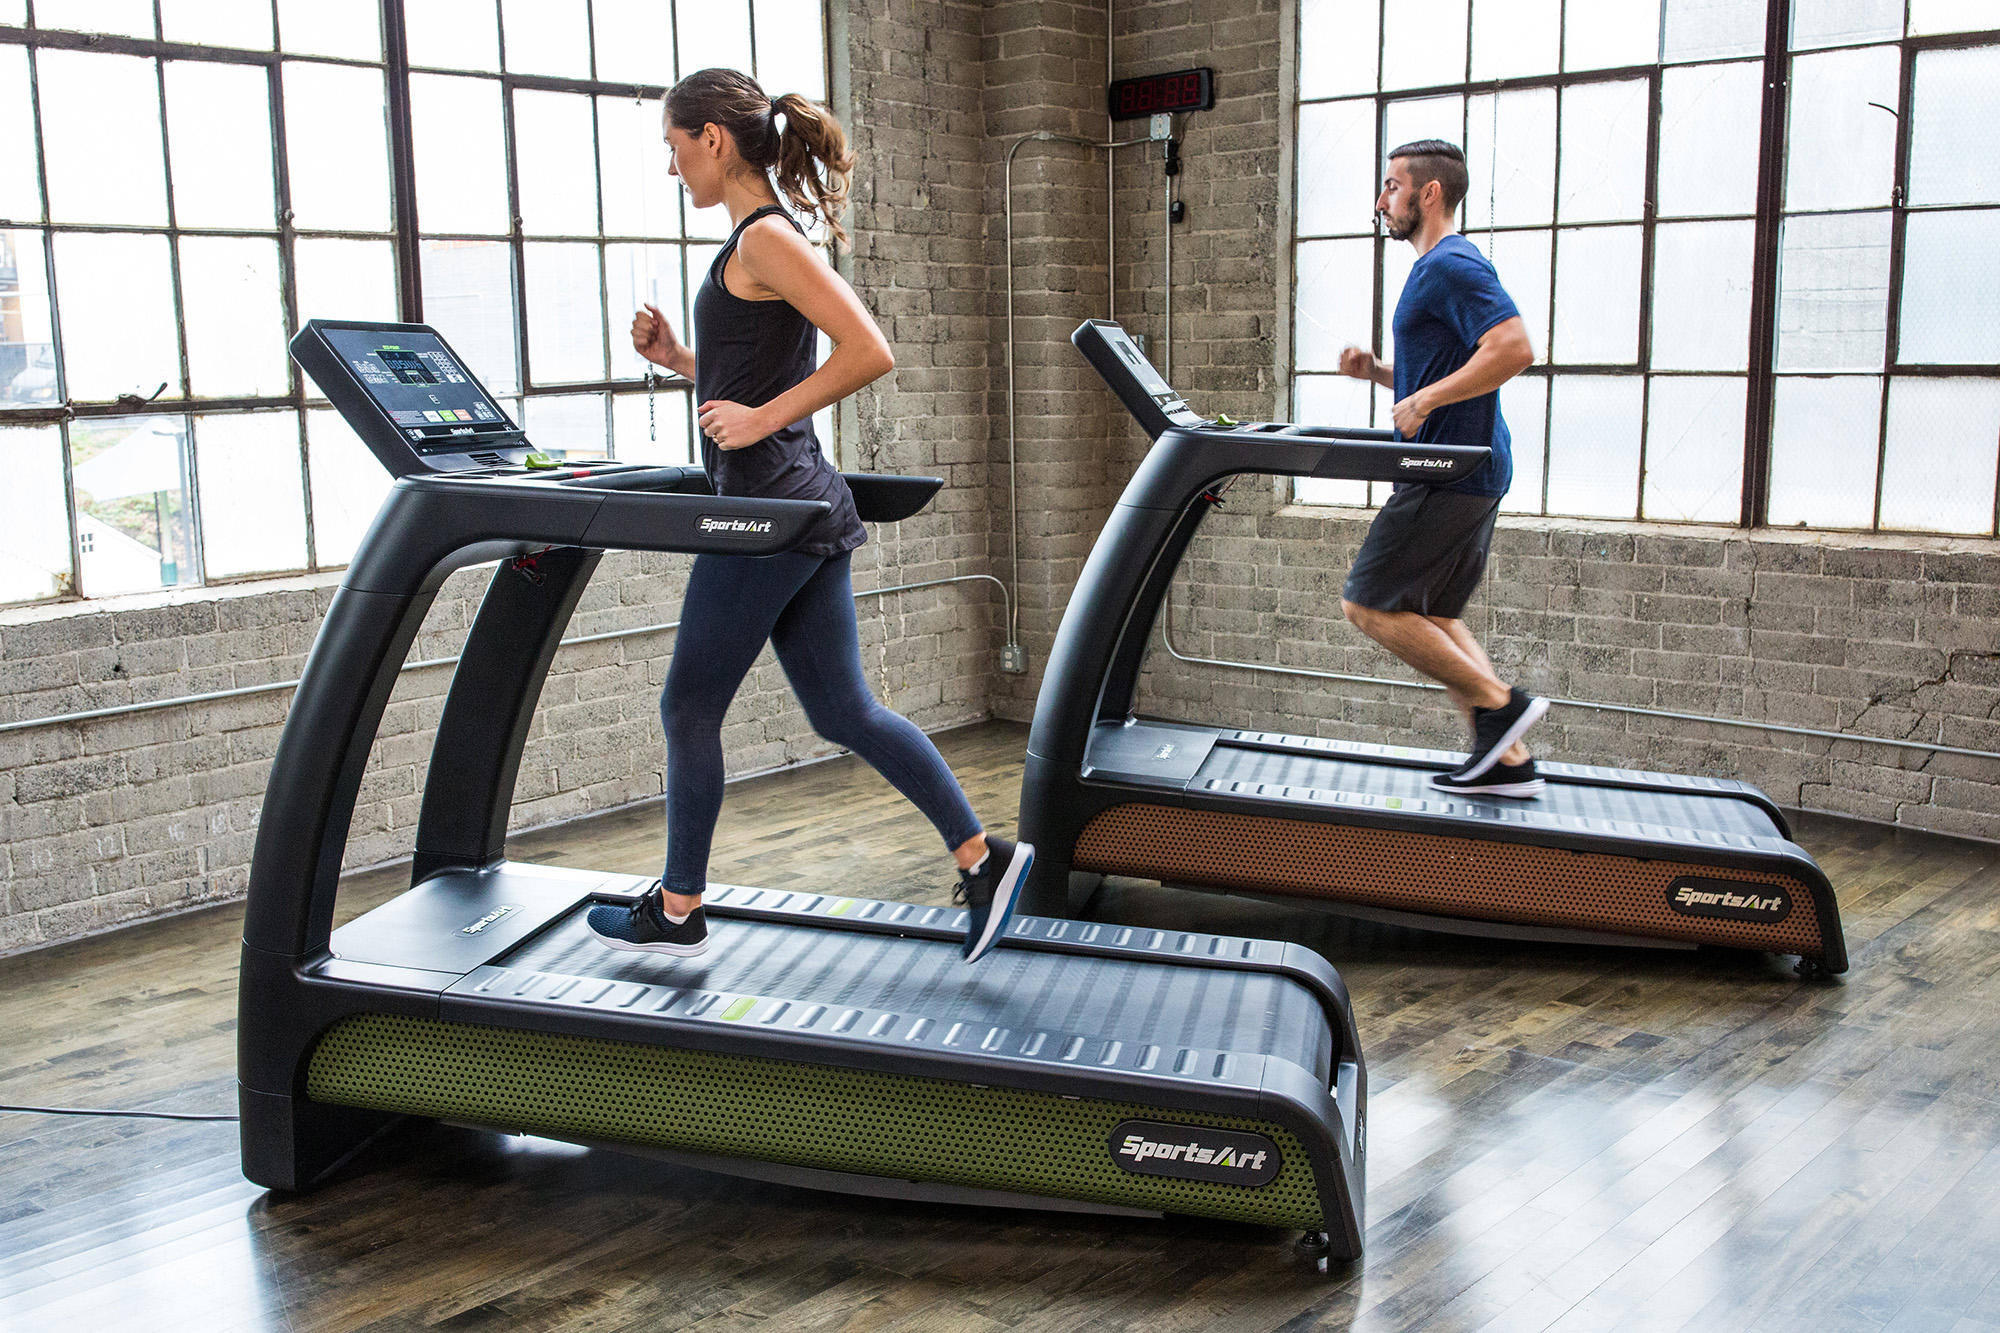 How tall people run on treadmills?